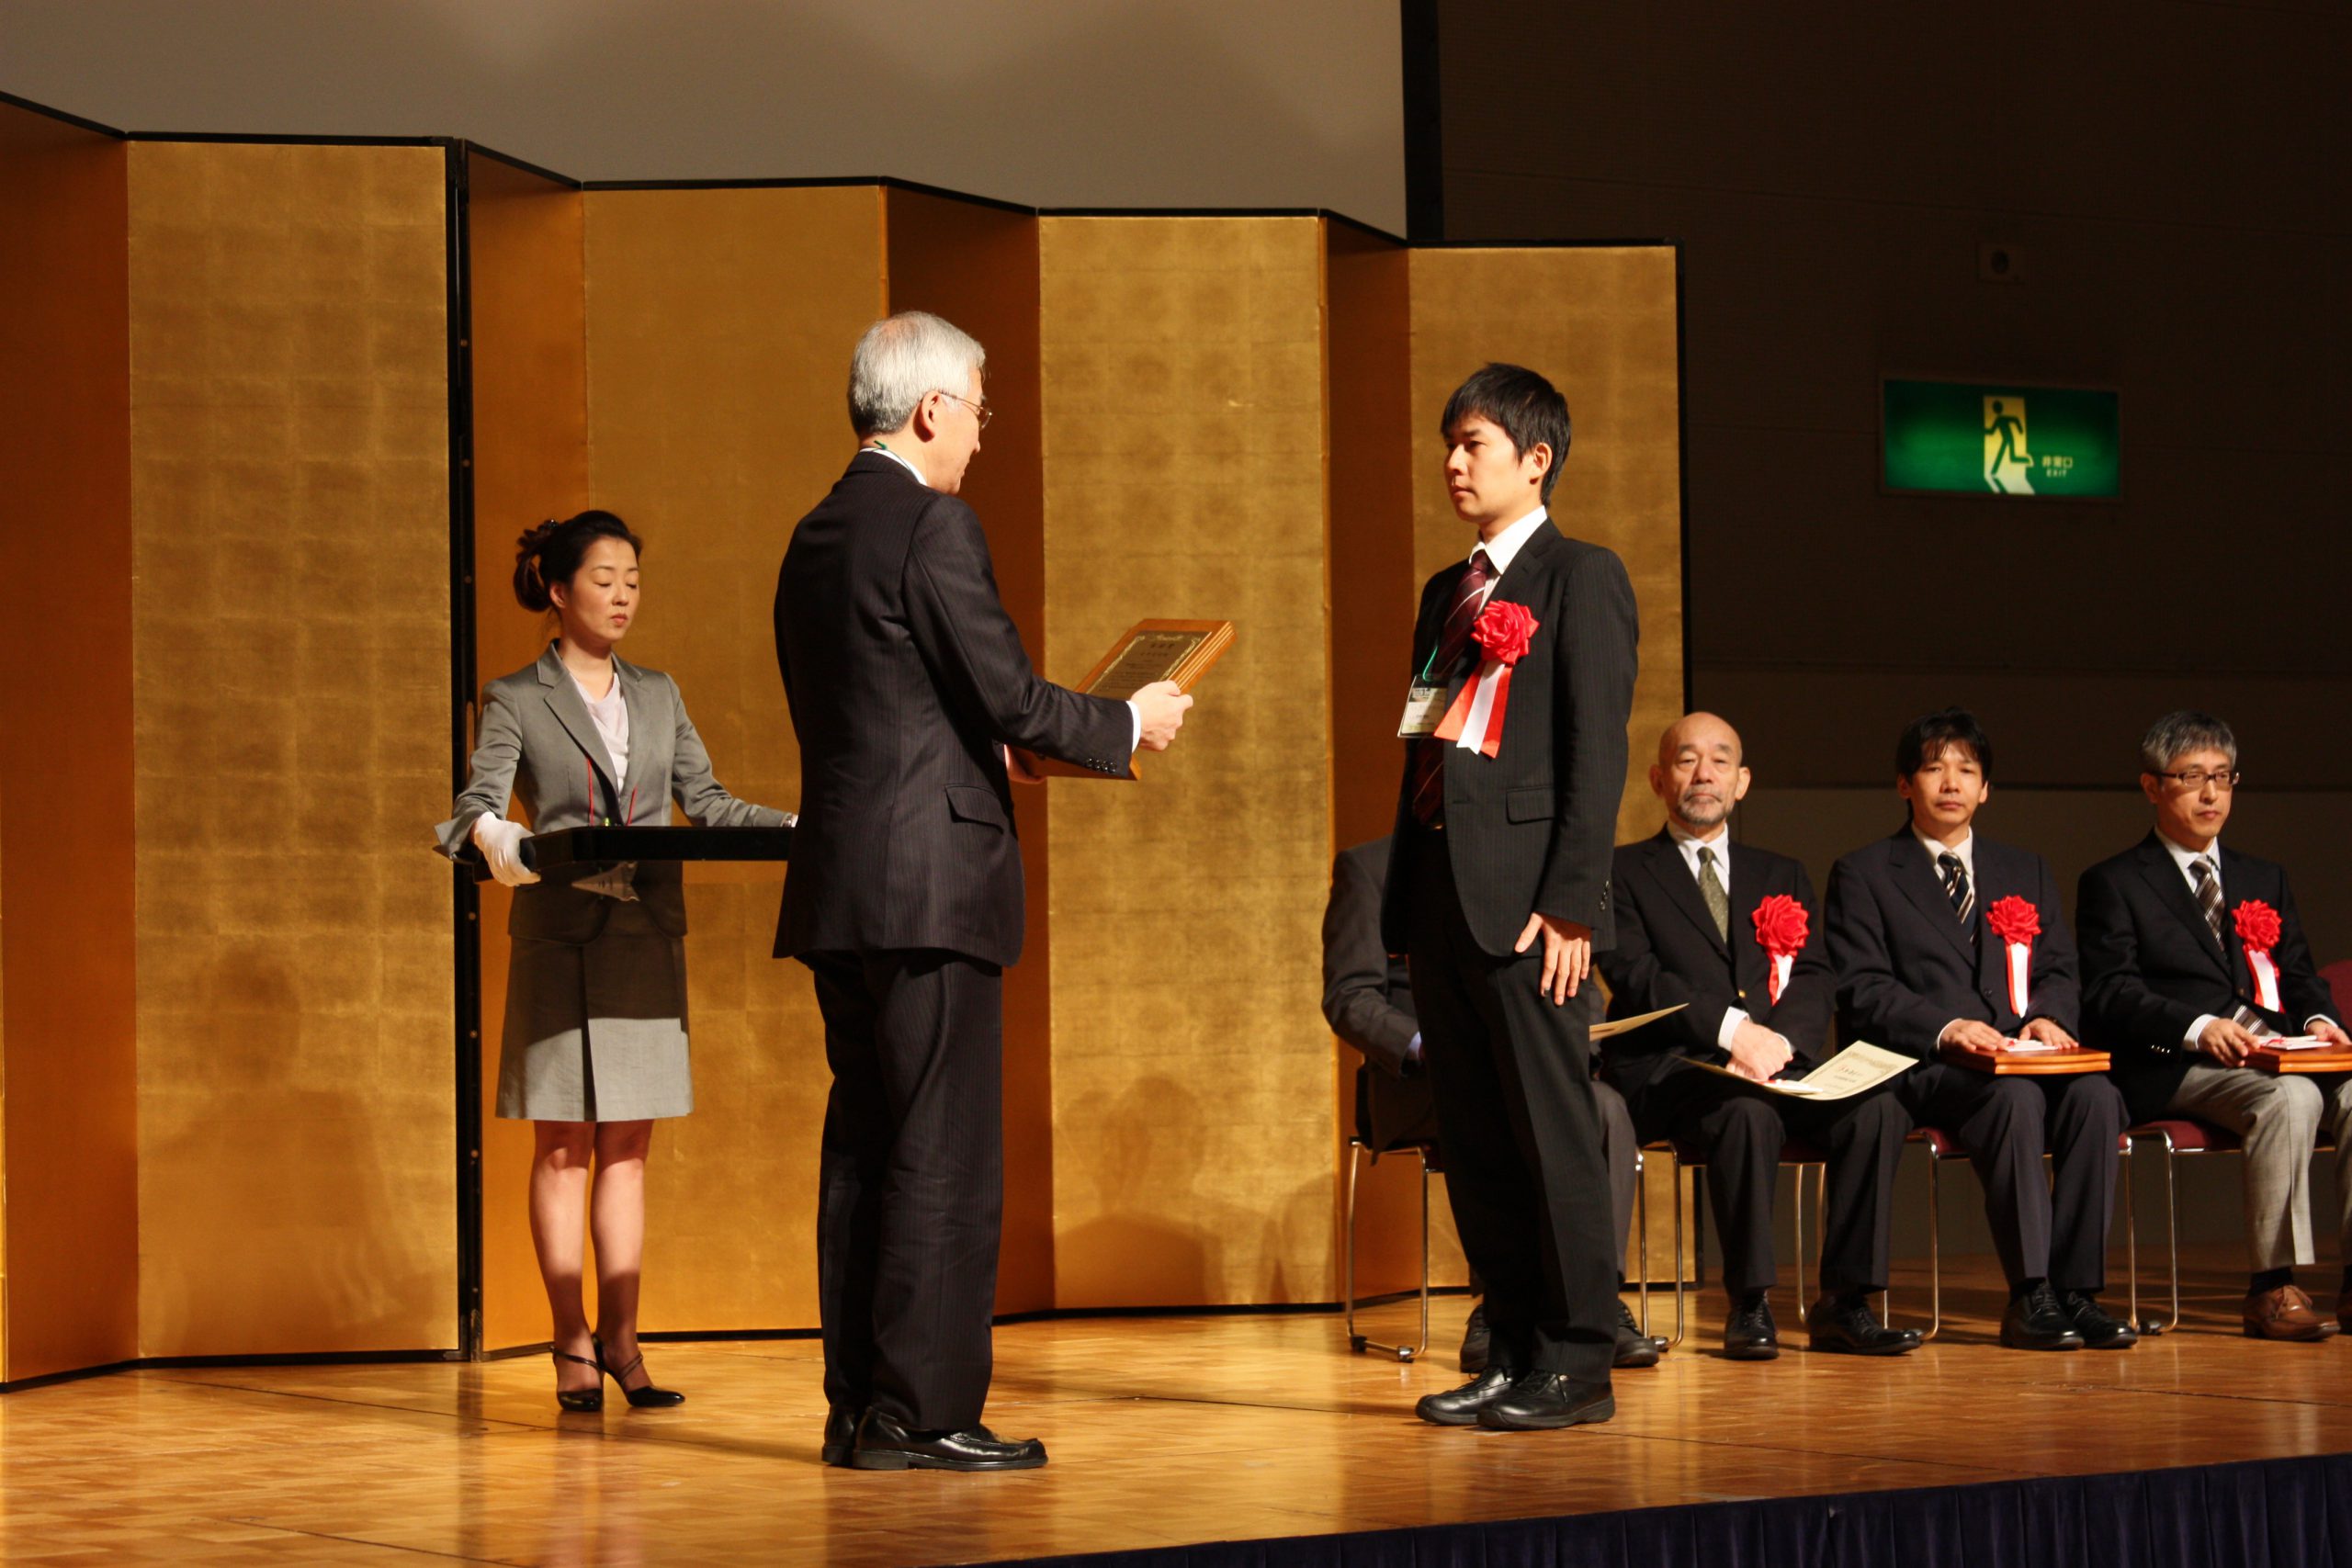 医学部附属病院薬剤部の田中亮裕薬剤師が平成23年度日本医療薬学会奨励賞を受賞